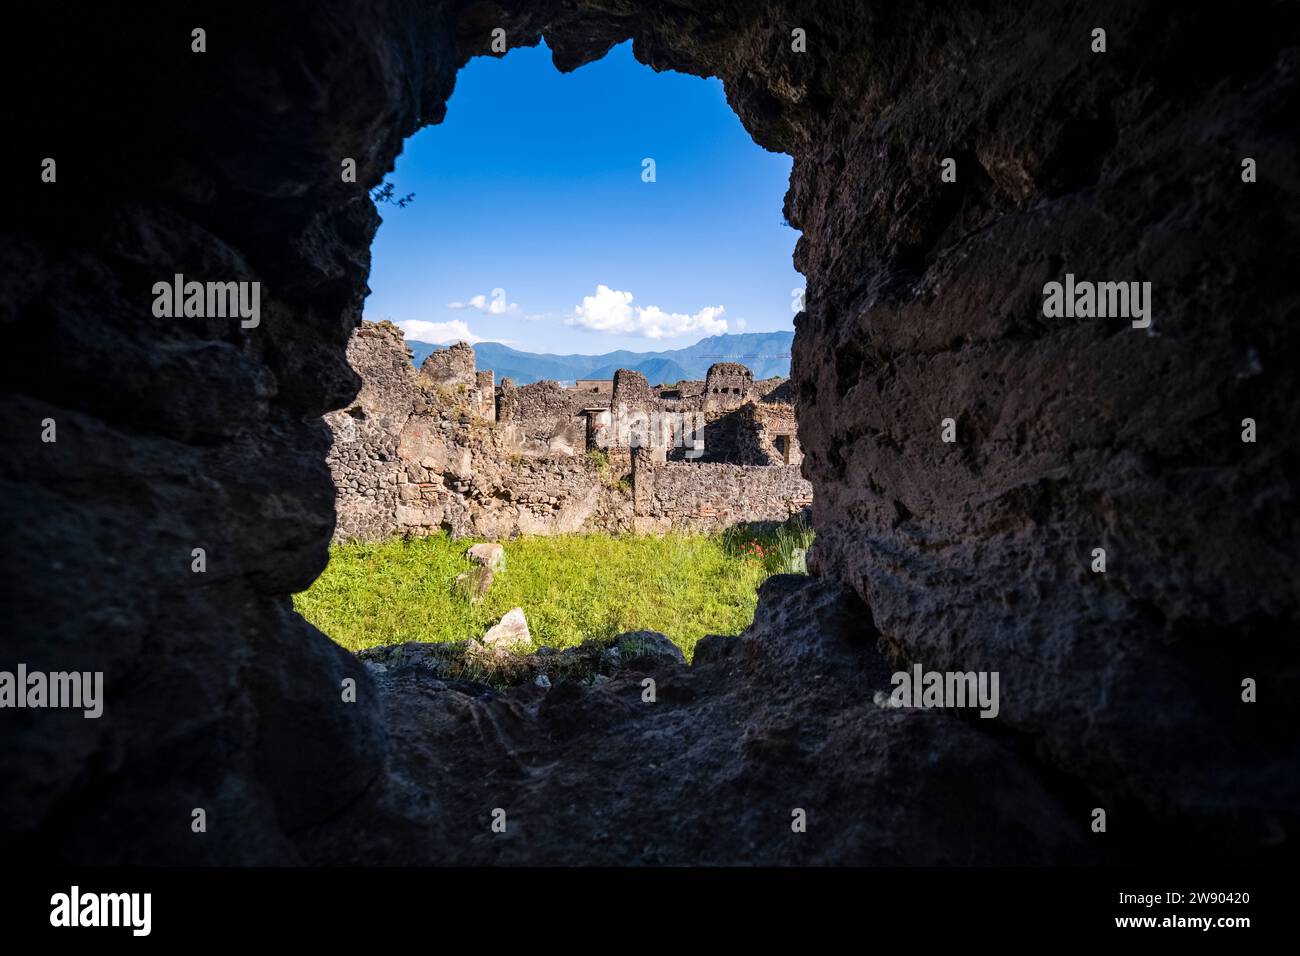 Ruinen in Vicolo di Mercurio in der archäologischen Stätte von Pompeji, einer antiken Stadt, die durch den Ausbruch des Vesuv im Jahr 79 n. Chr. zerstört wurde. Stockfoto